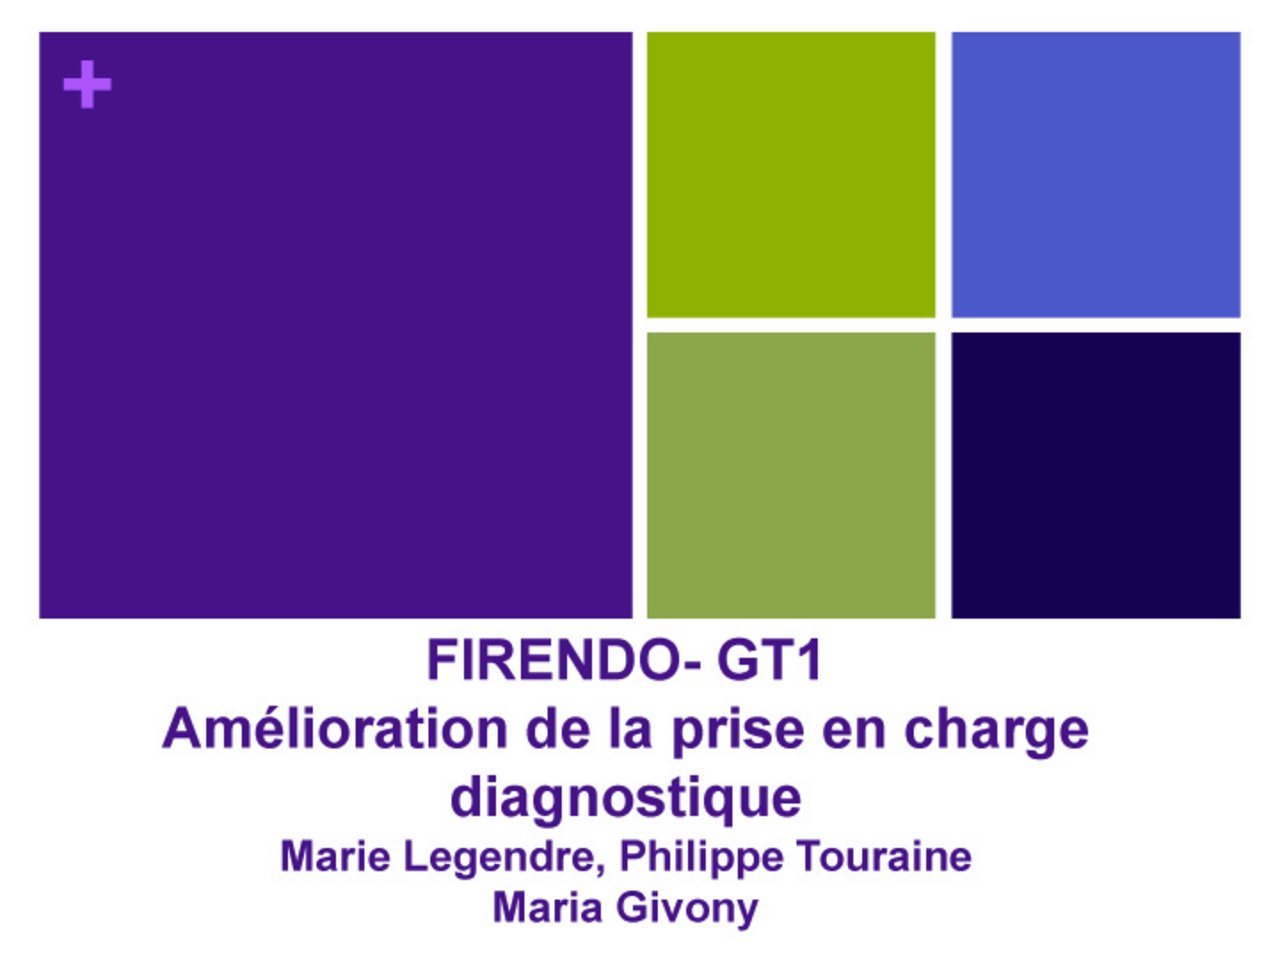 Touraine : "GT1 FIRENDO "Amélioration de la prise en charge diagnostique"